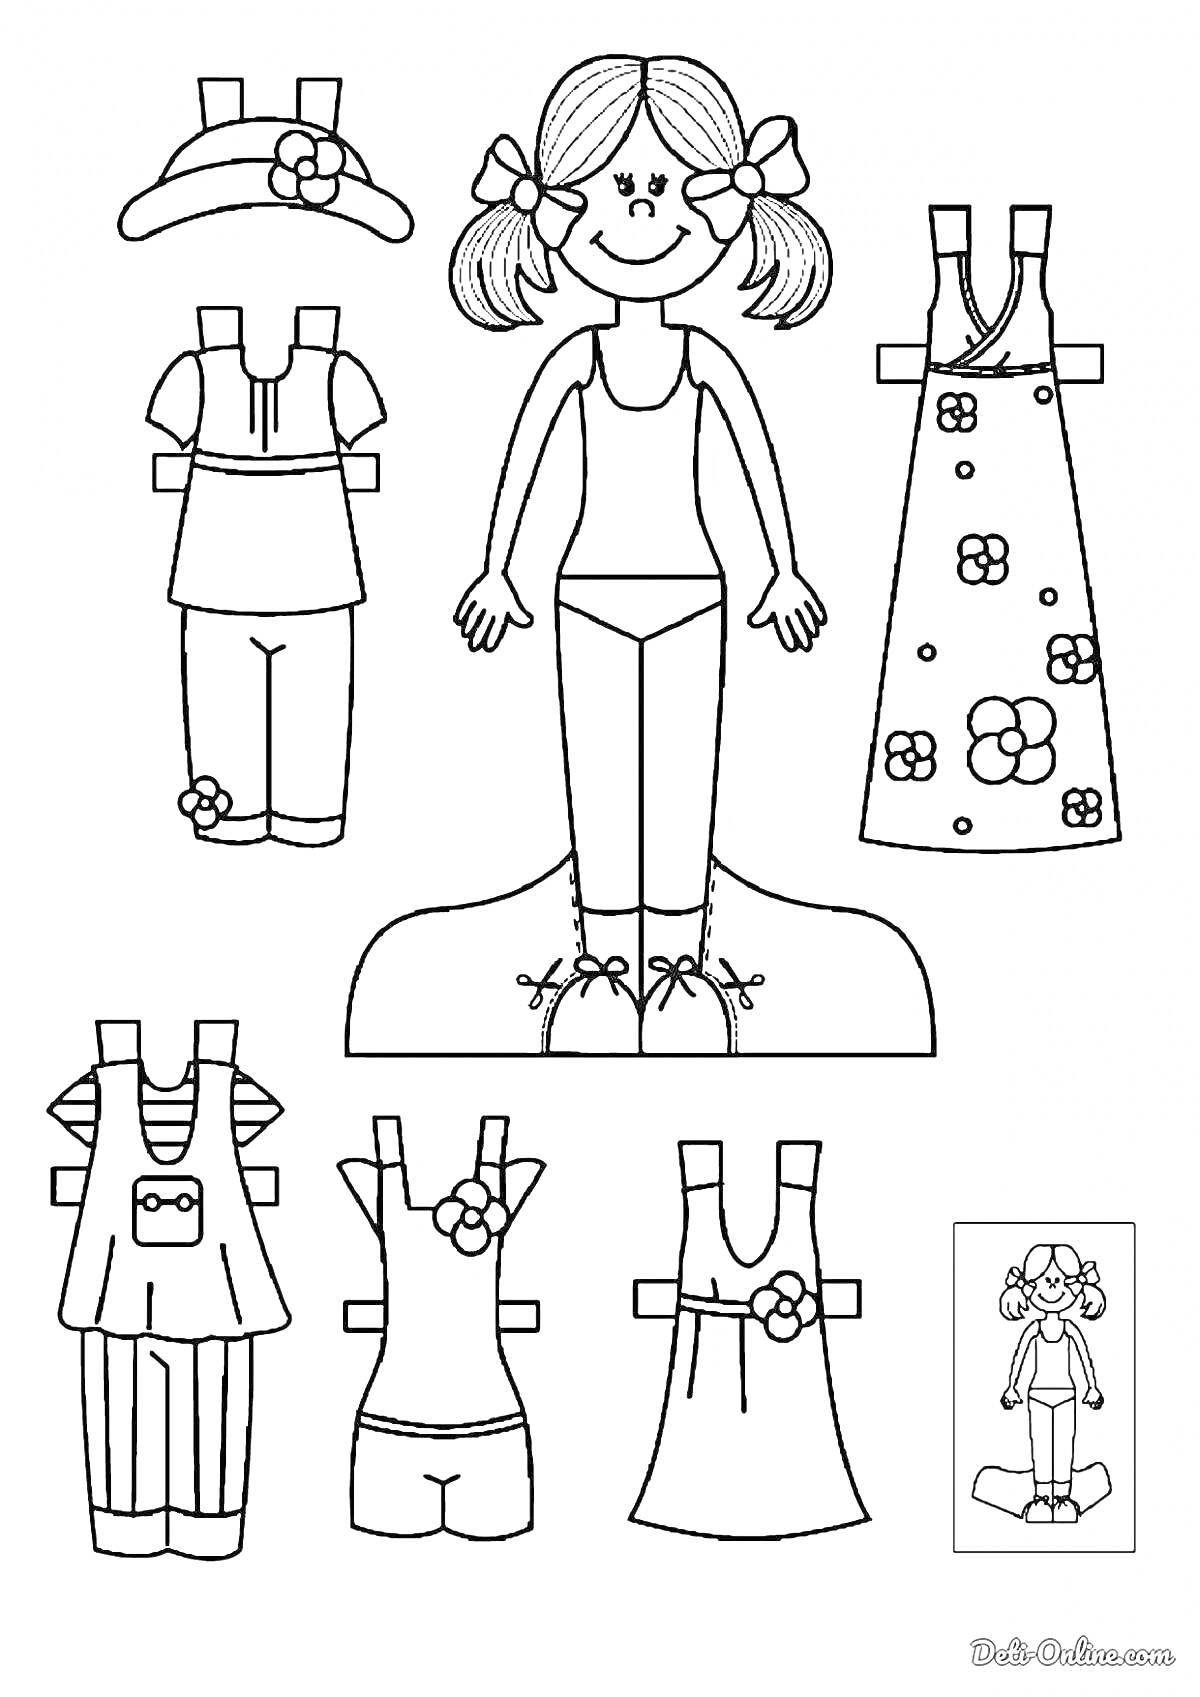 Раскраска Девочка с разными нарядами и аксессуарами